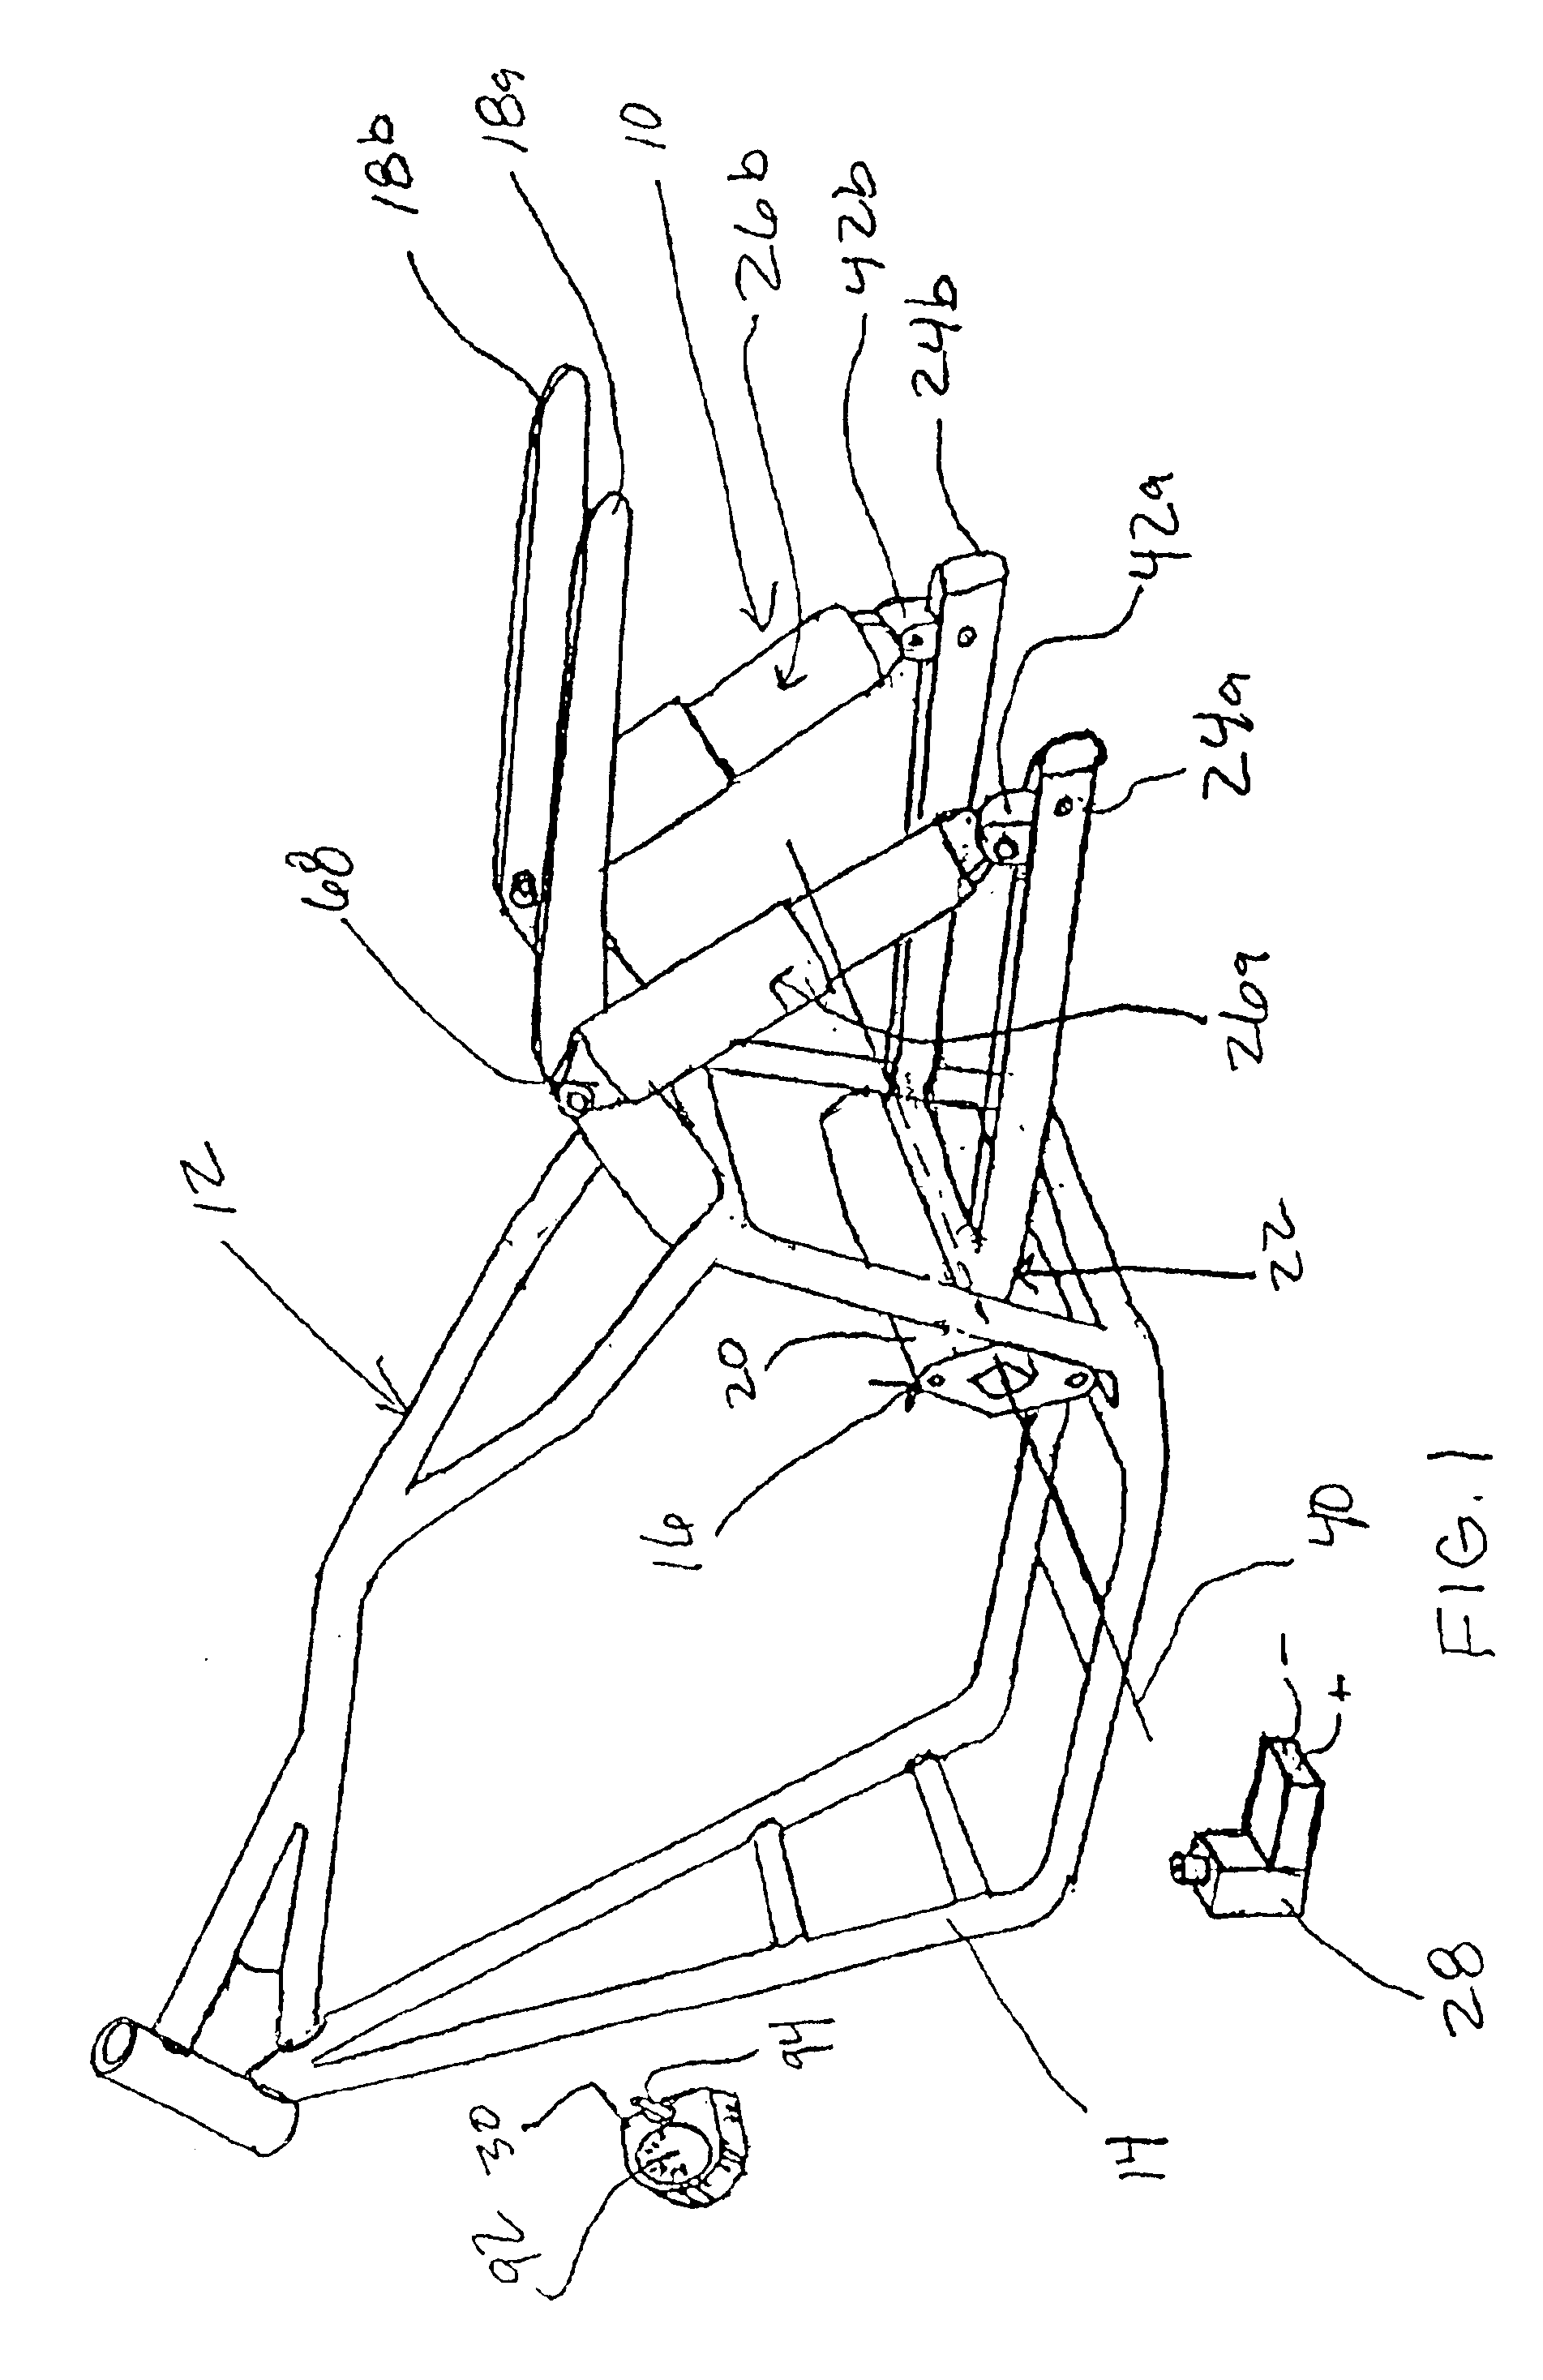 Air-bag suspension system